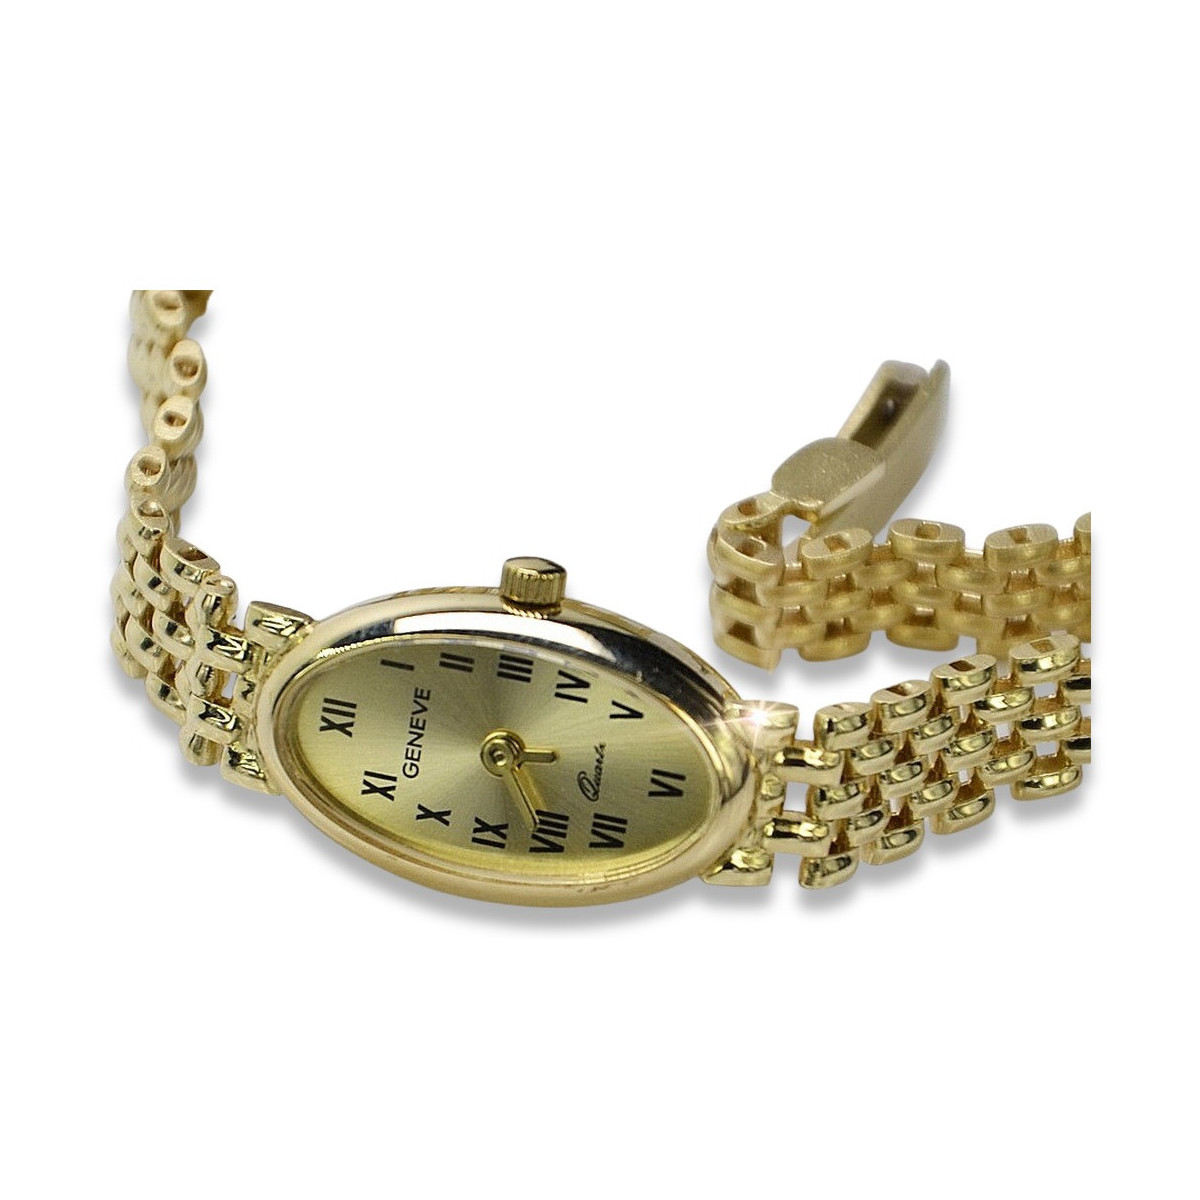 Fashion Watch Women Quartz Gold Dial Watch Dress Casual Female Wristwatch  Ladies Clock Gift Women Watch Relogio Mujer Hot - Quartz Wristwatches -  AliExpress